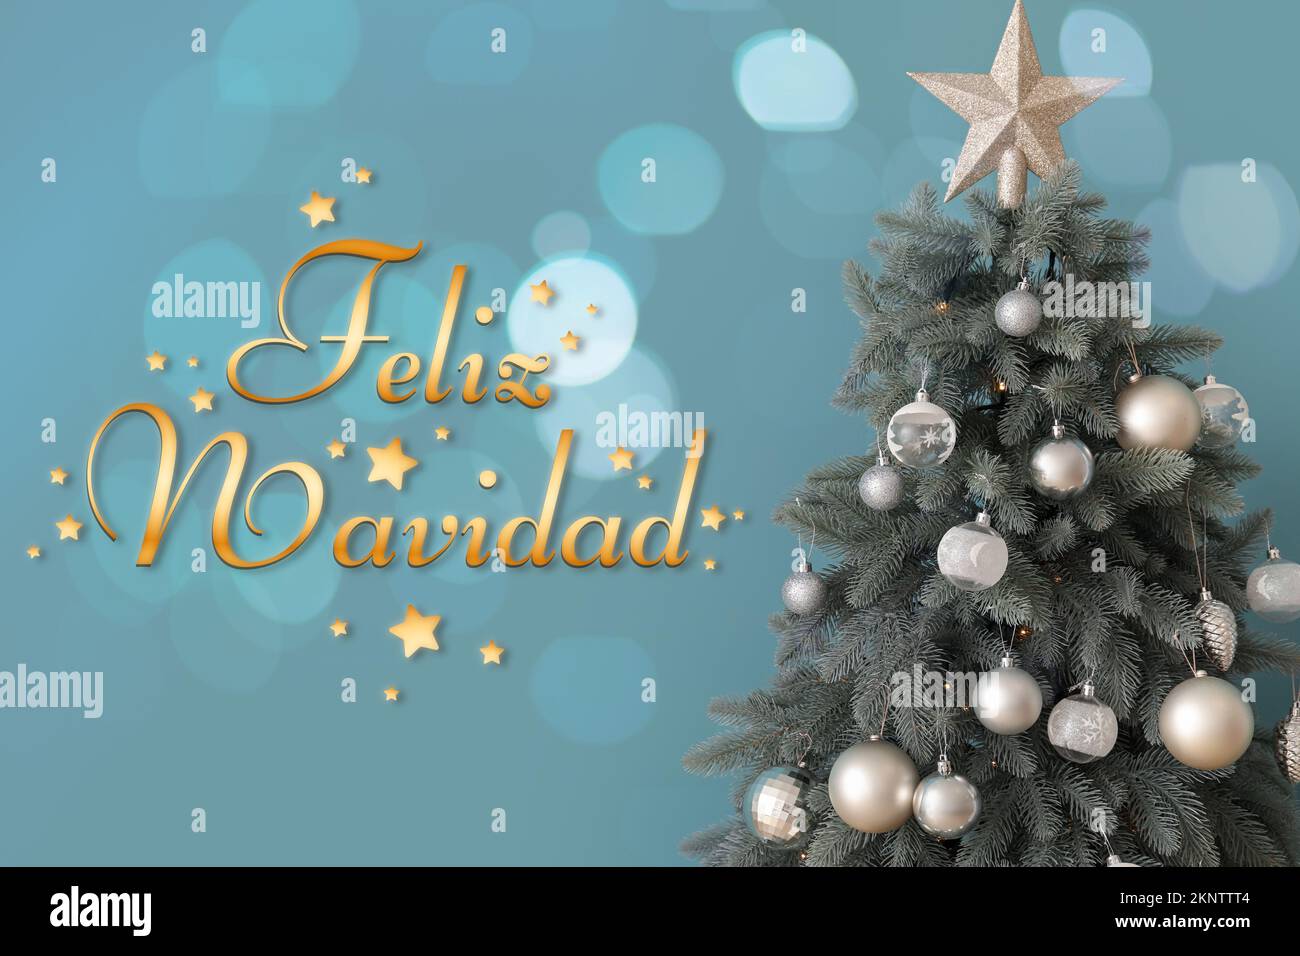 Grußkarte mit dekoriertem Tannenbaum und Text FELIZ NAVIDAD (Spanisch für fröhliche Weihnachten) auf blauem Hintergrund Stockfoto